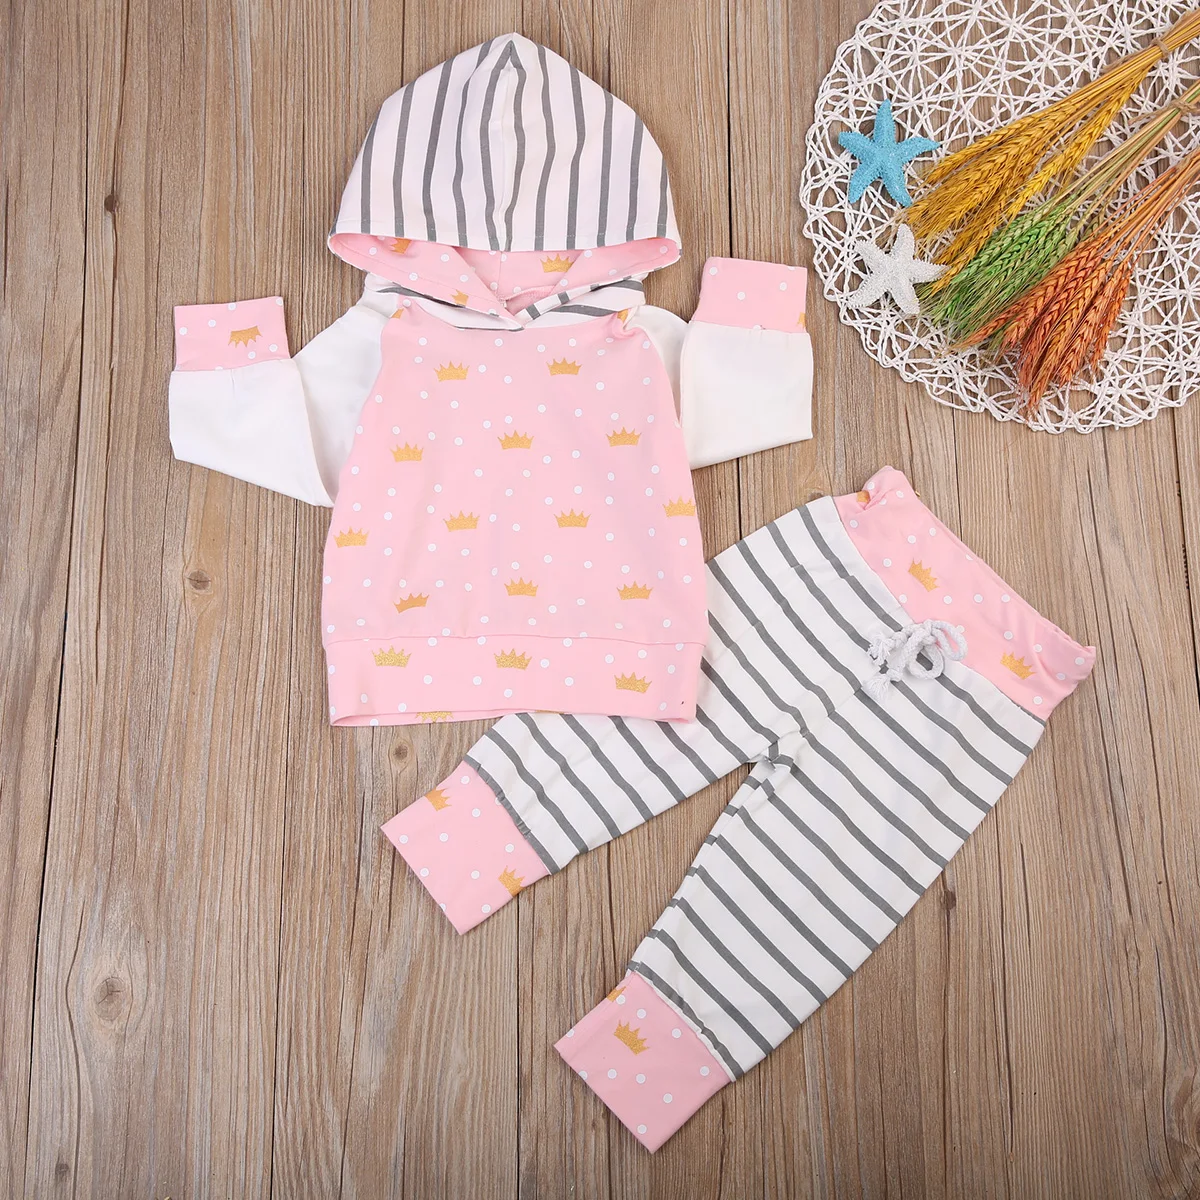 Осень г. Одежда для новорожденных девочек милый костюм принцессы тиара с капюшоном+ штаны в полоску розовый комплект одежды для малышей